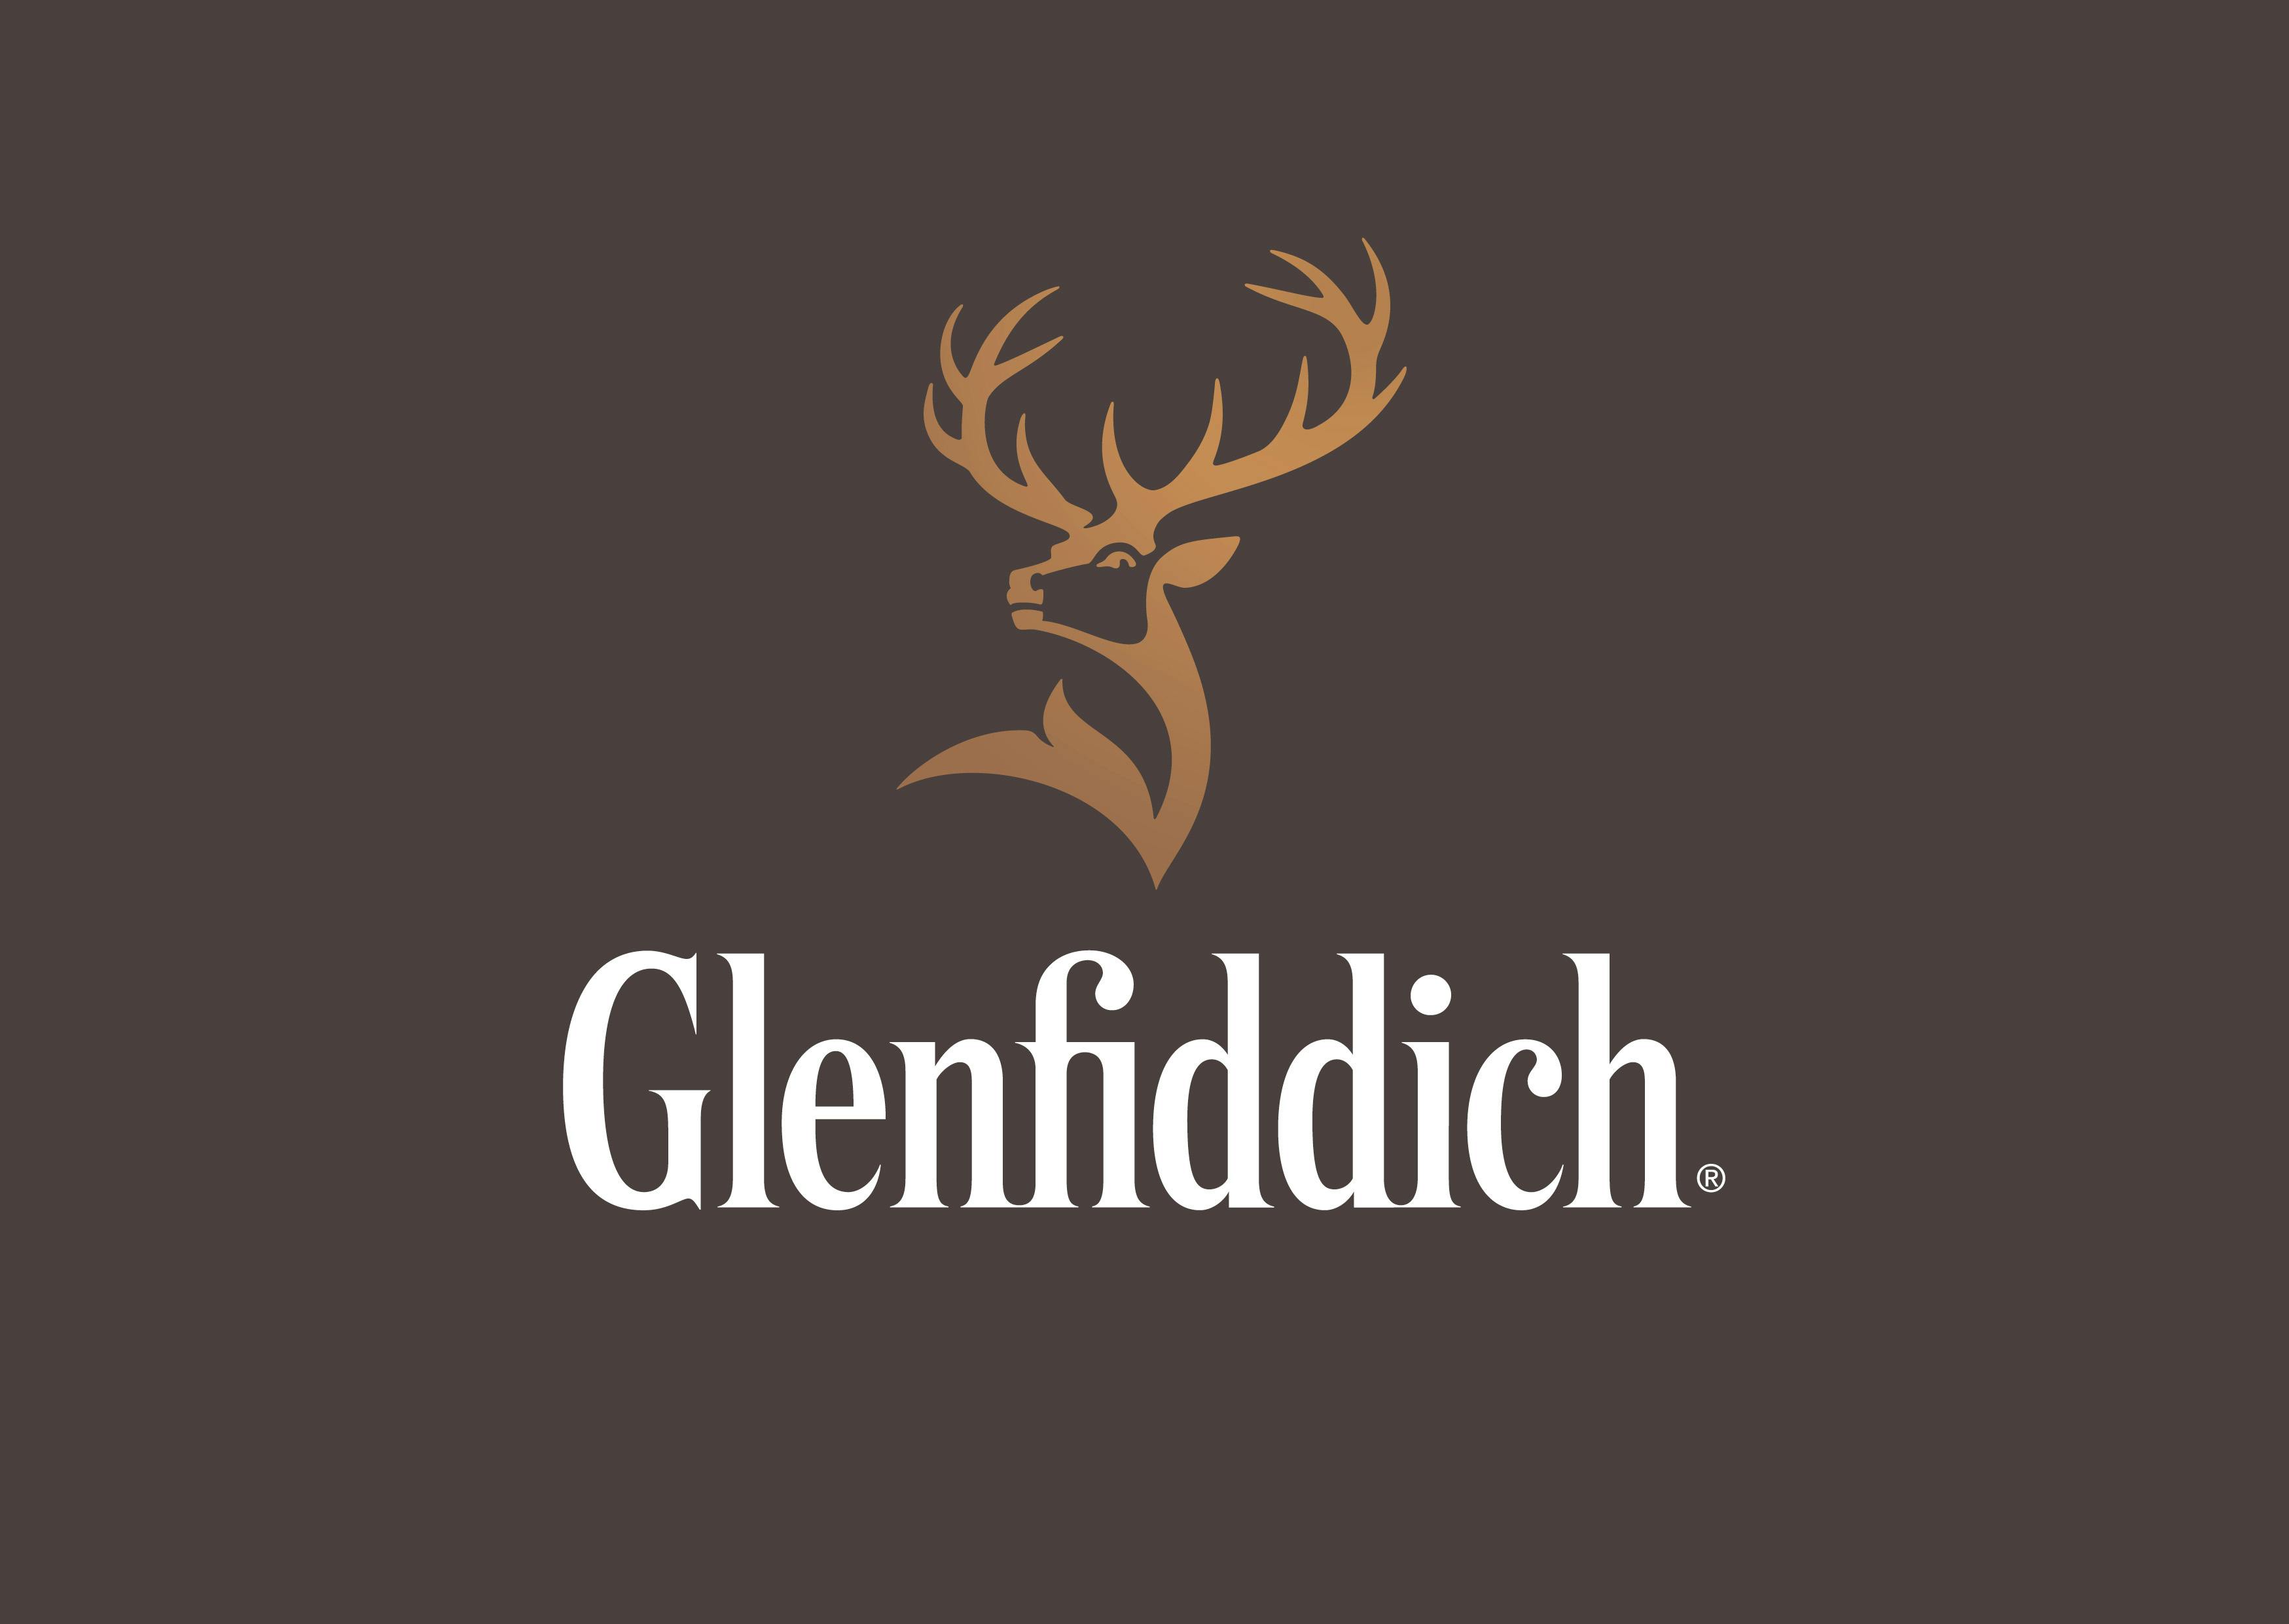 glenfiddich 12 year old scotch whisky bottle Stock Photo - Alamy